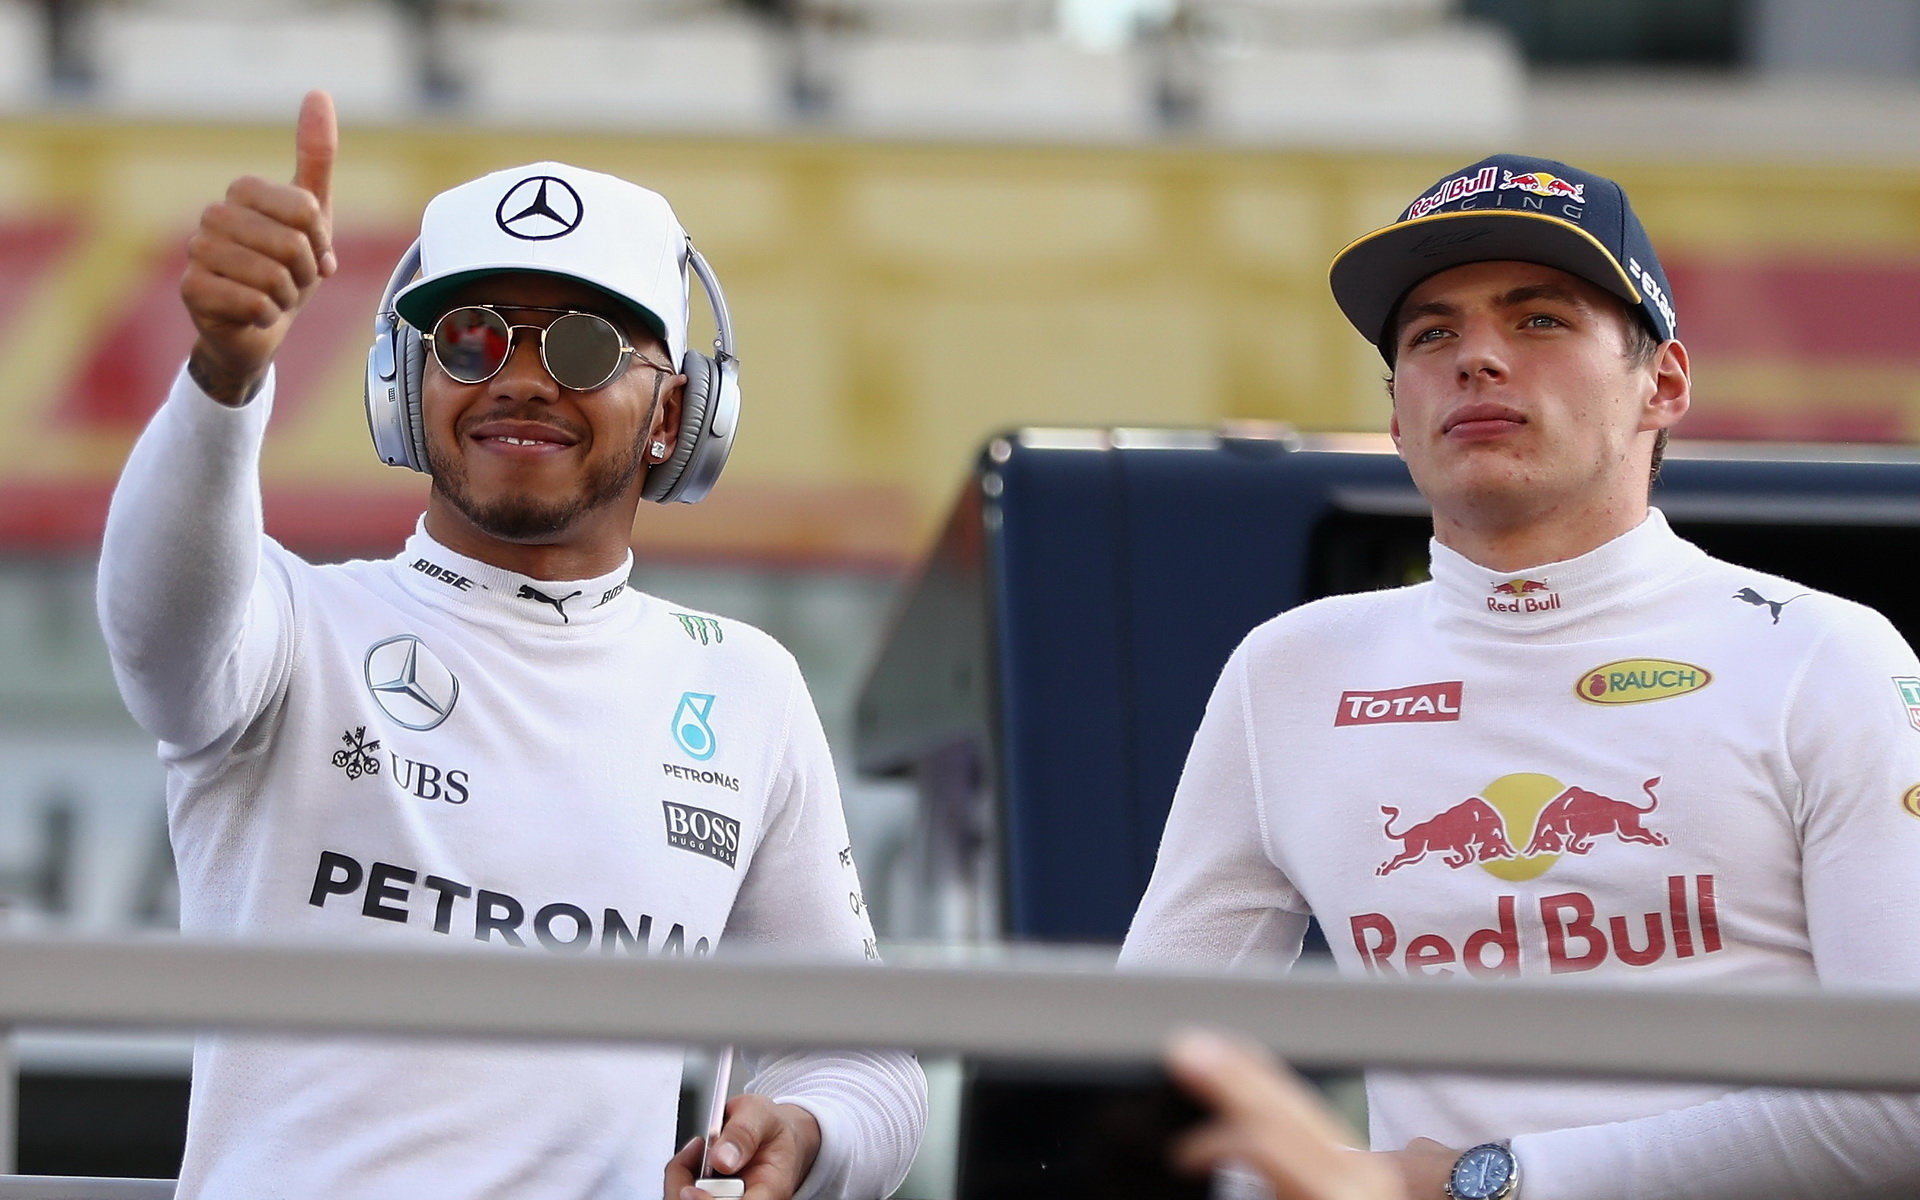 Lewis Hamilton a Max Verstappen před závodem v Abú Zabí